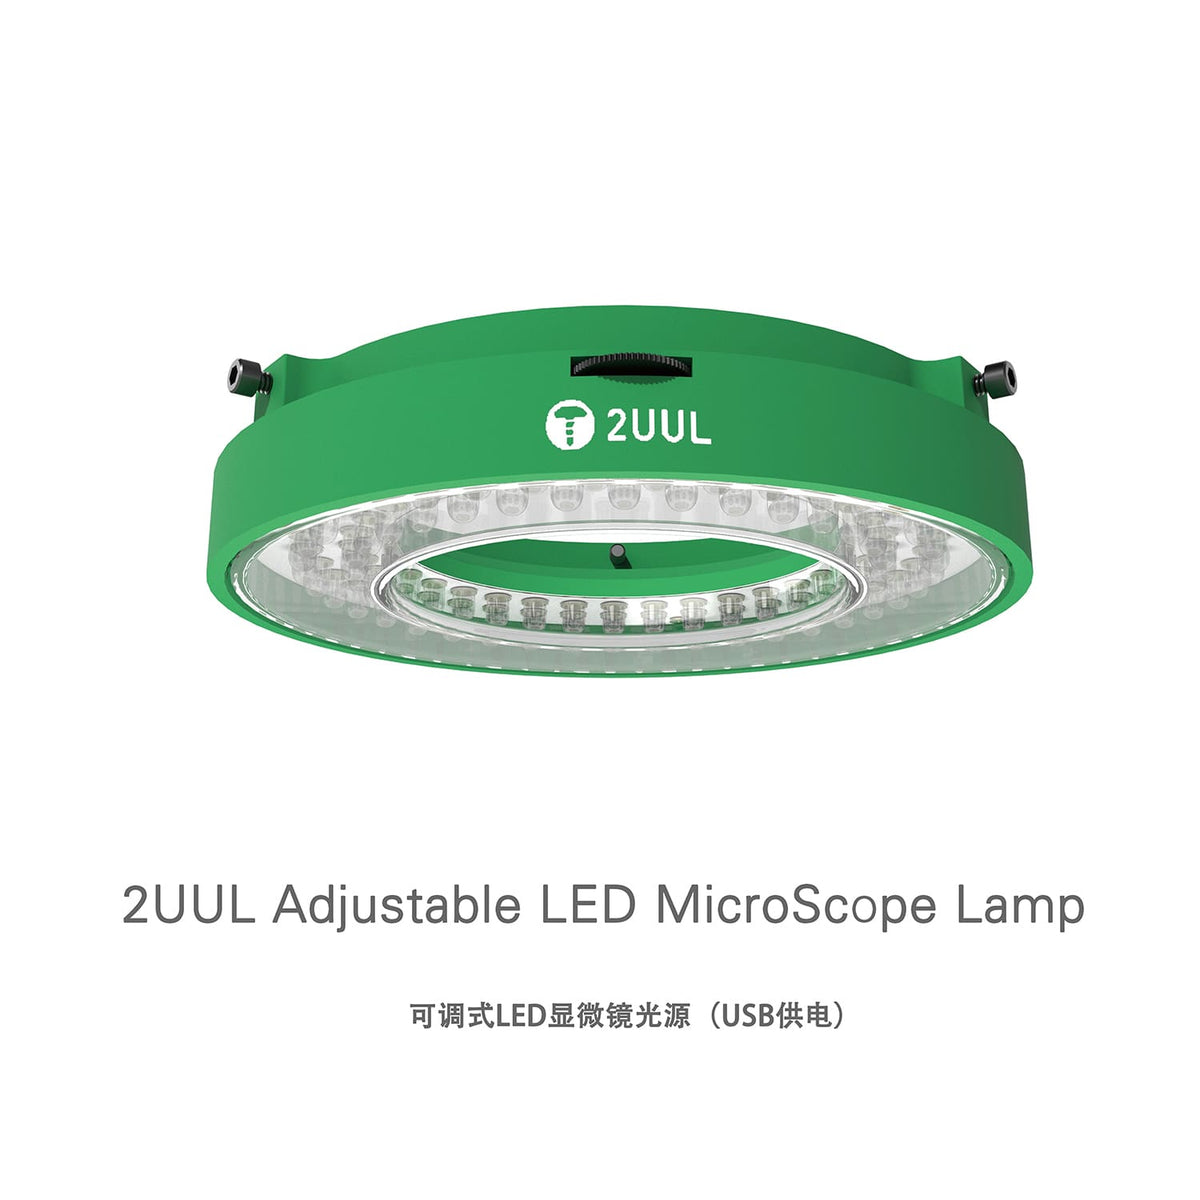 2UUL ADJUSTABLE LED MICROSCOPE LAMP